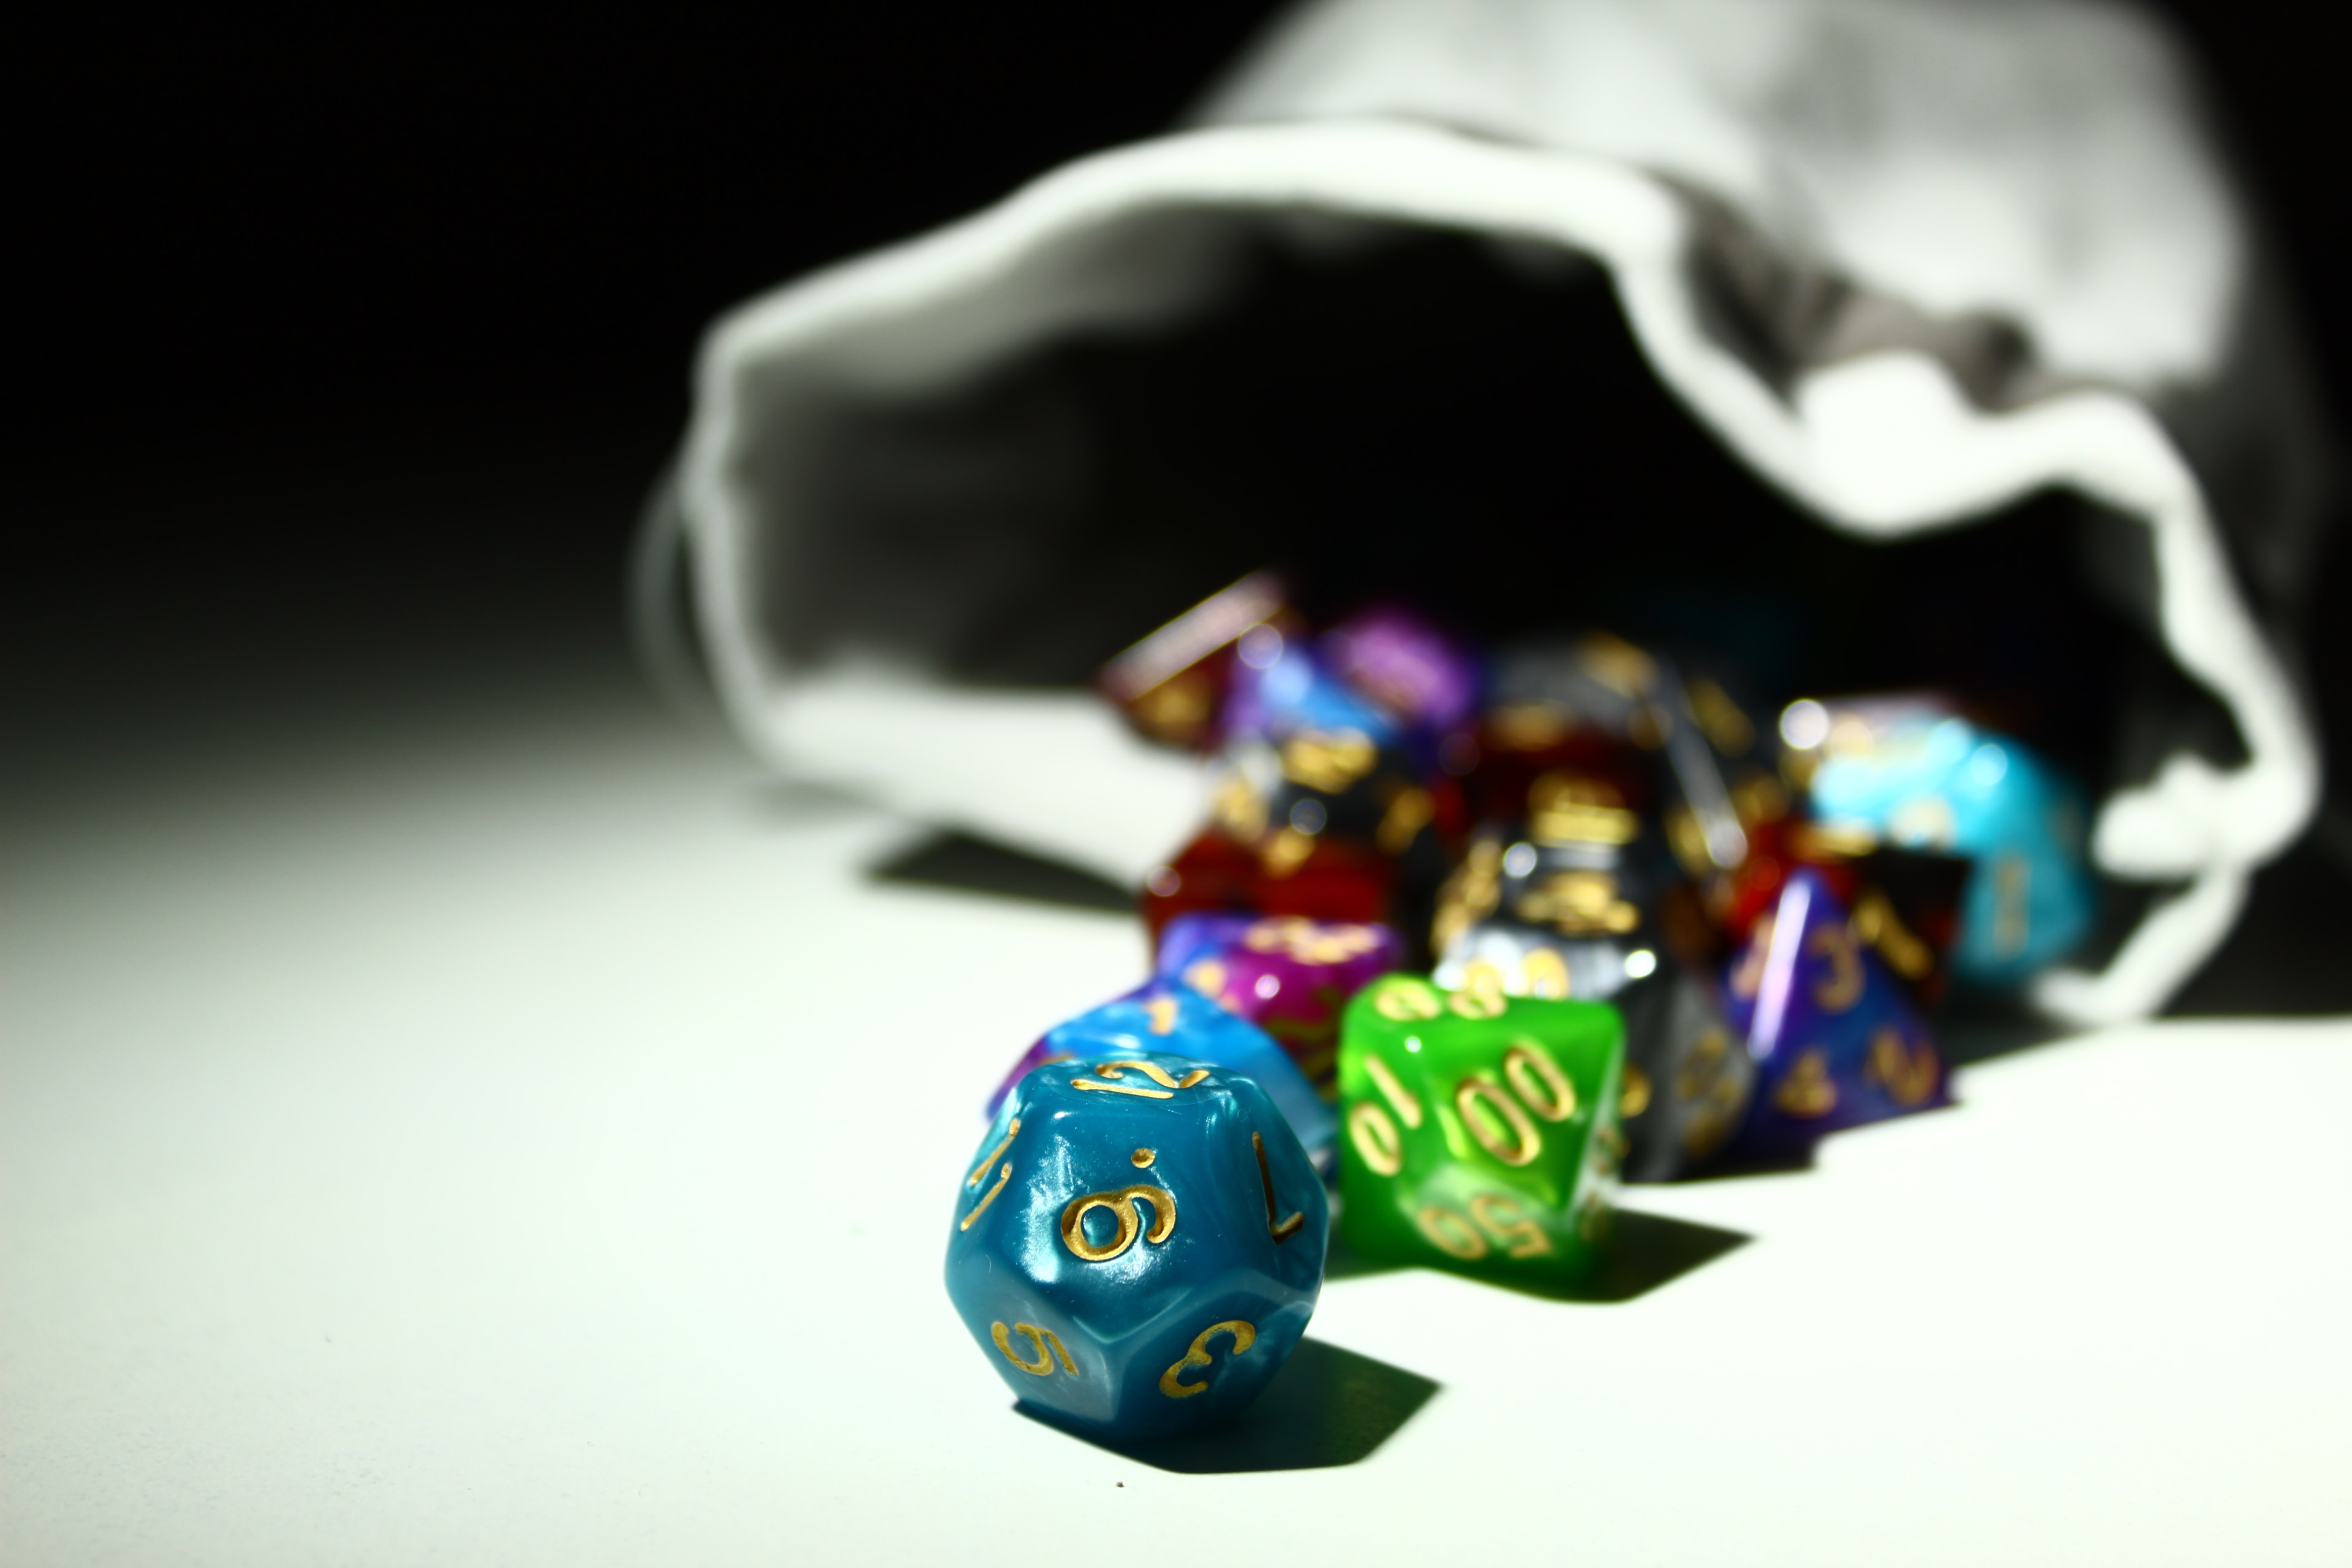 A bag of RPG dice